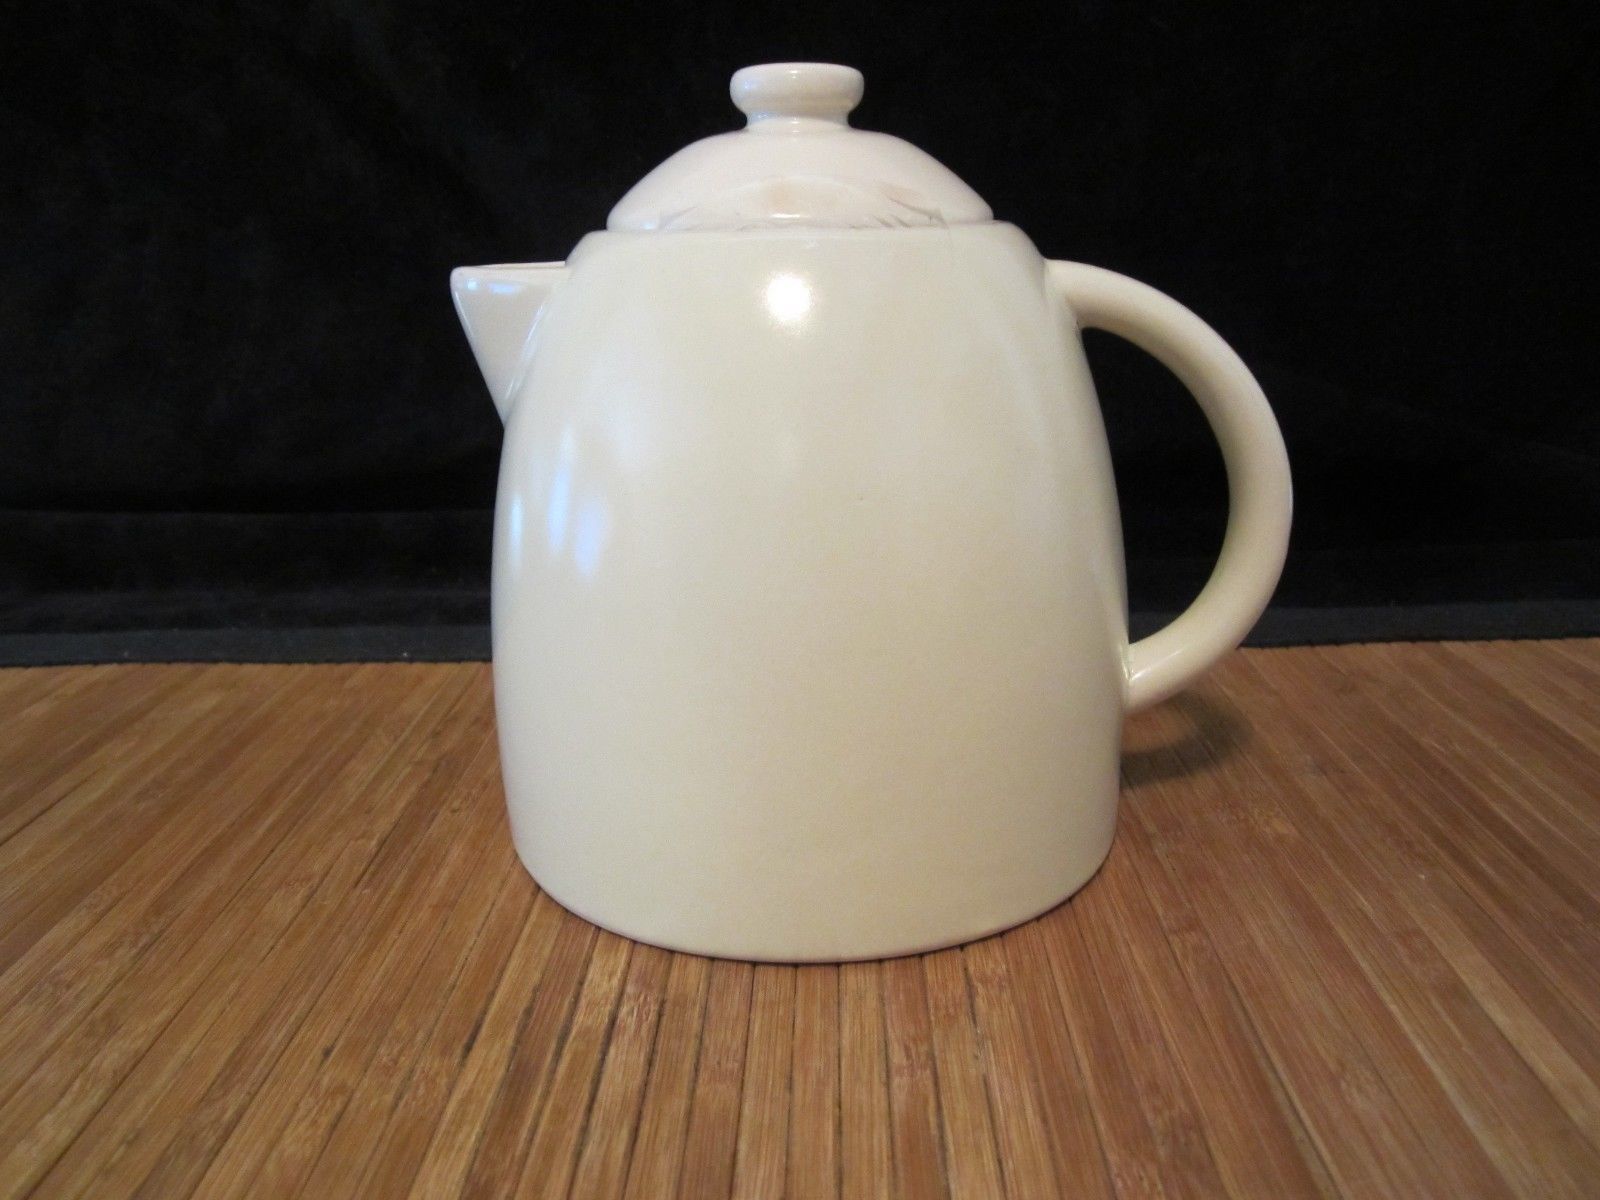 2011 Starbucks Pottery Ceramic Coffee Tea Pitcher 25 oz White - $15.99